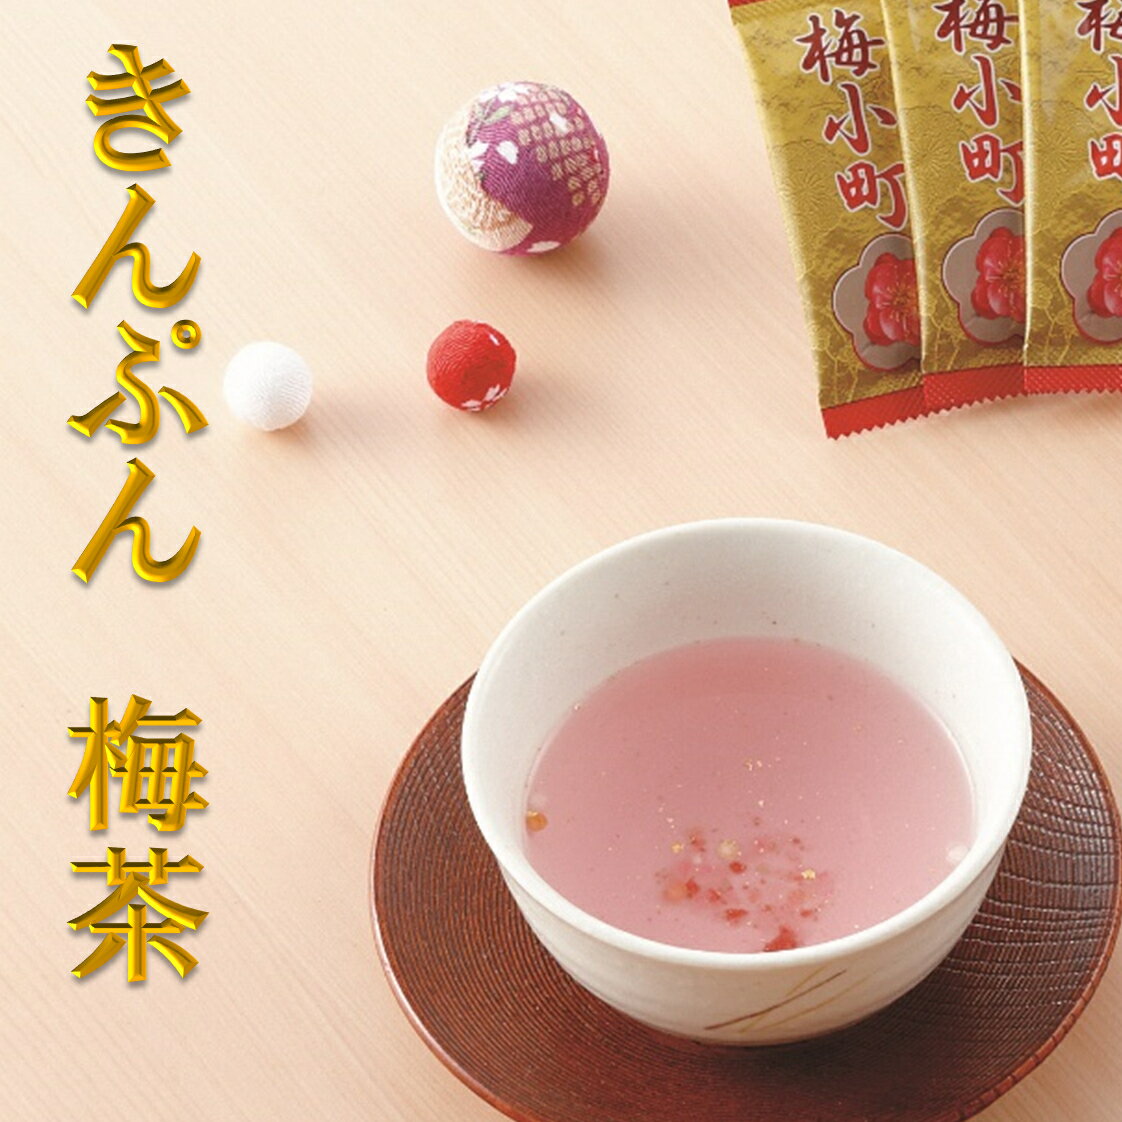 梅茶 金箔入り ピンクのお茶 かわいい お茶 日本茶 風味茶 アラレ 客用 縁起の良い 【梅小町】